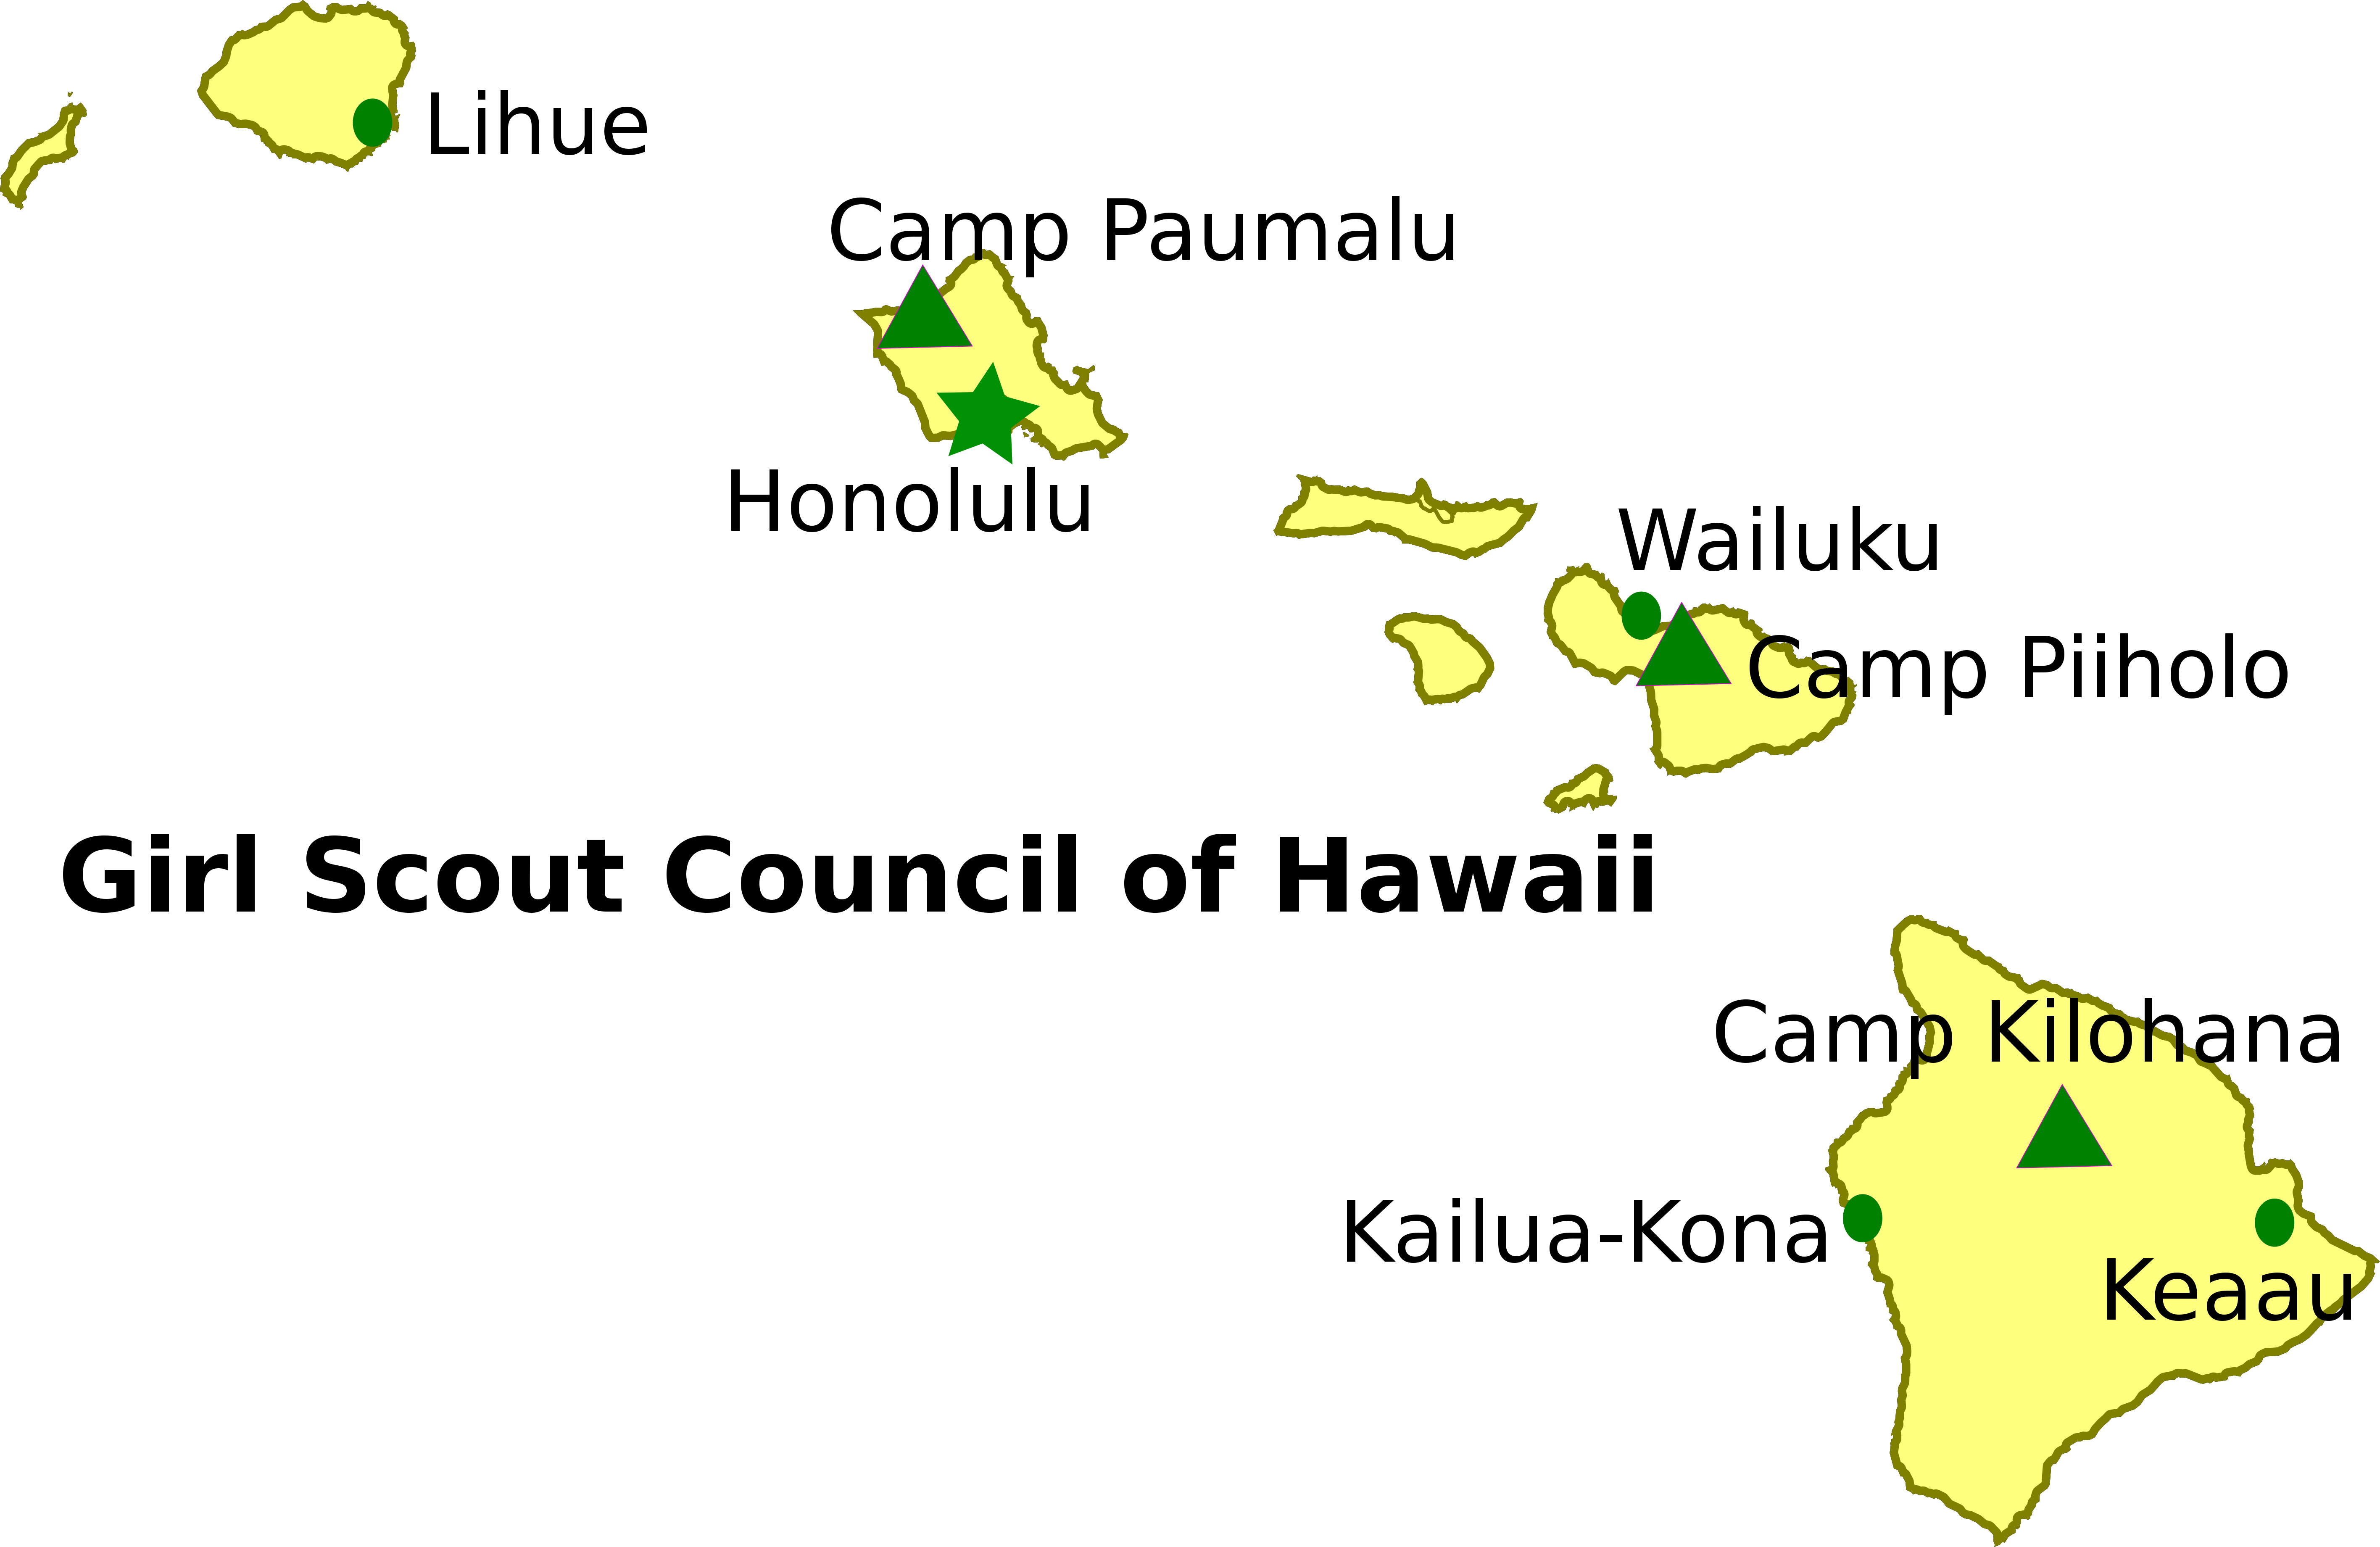 hawaii clipart map hawaii